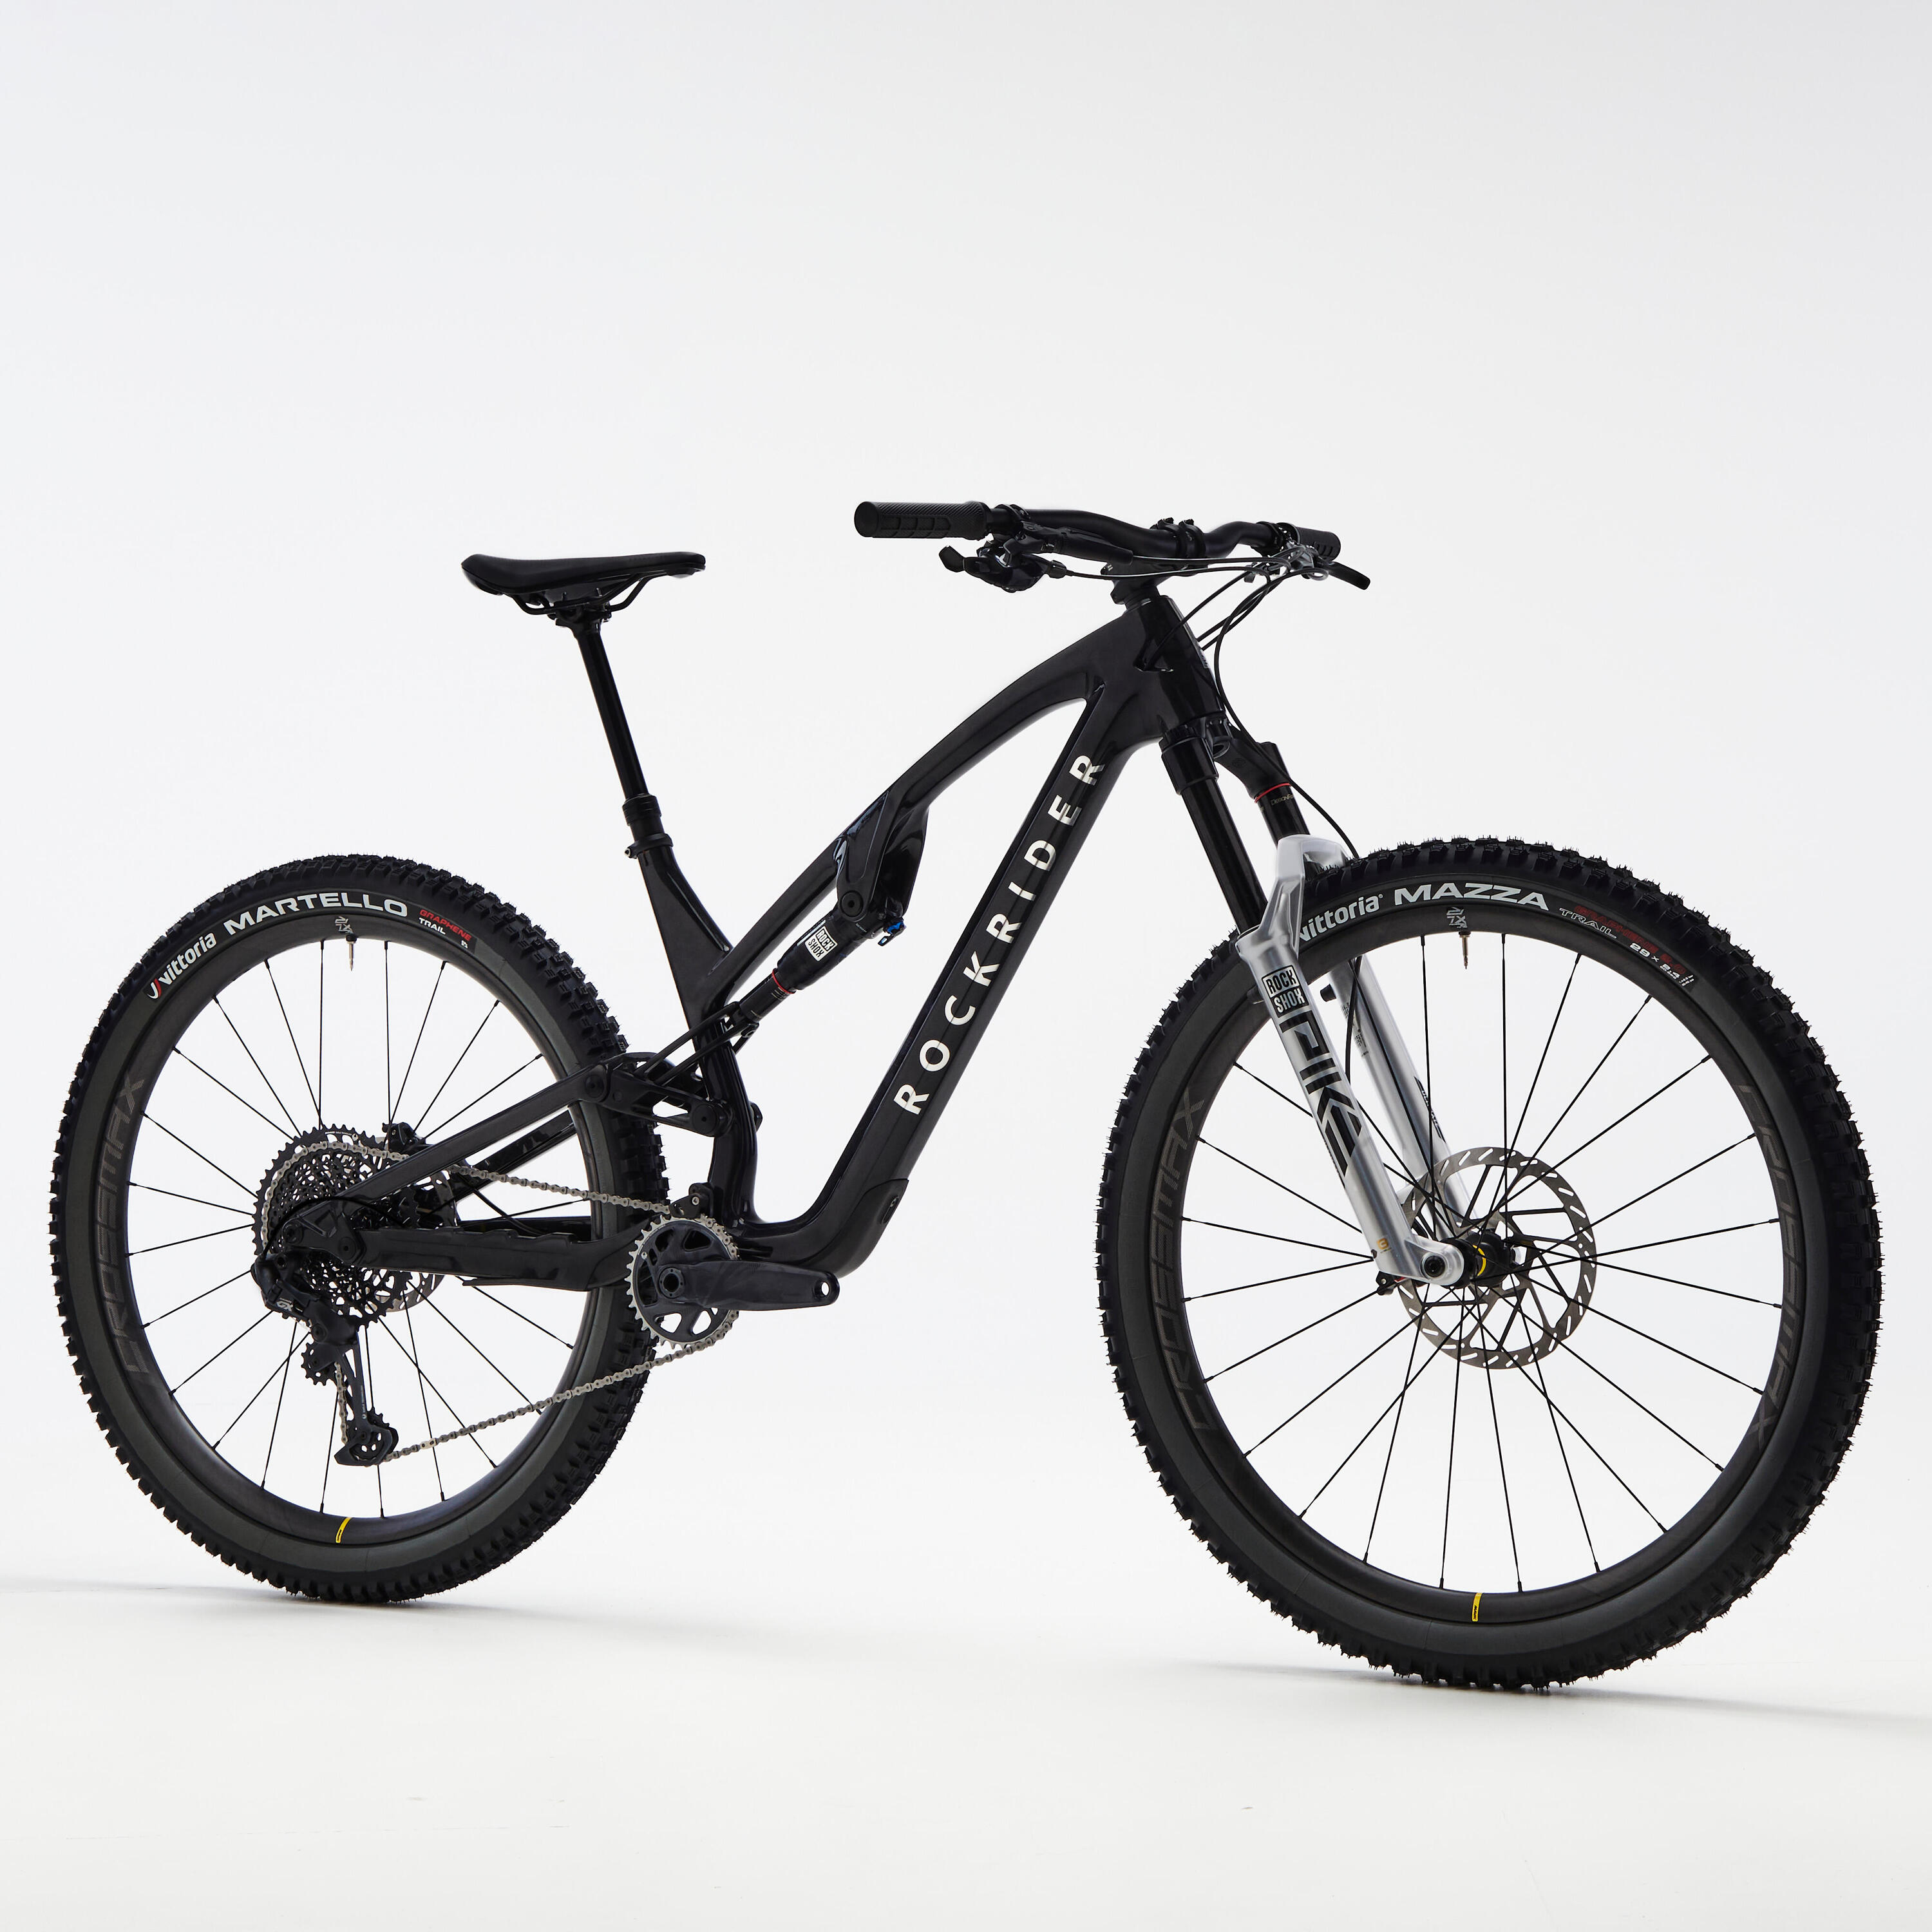 Carbon frame, adjustable suspension mountain bike, black 4/11